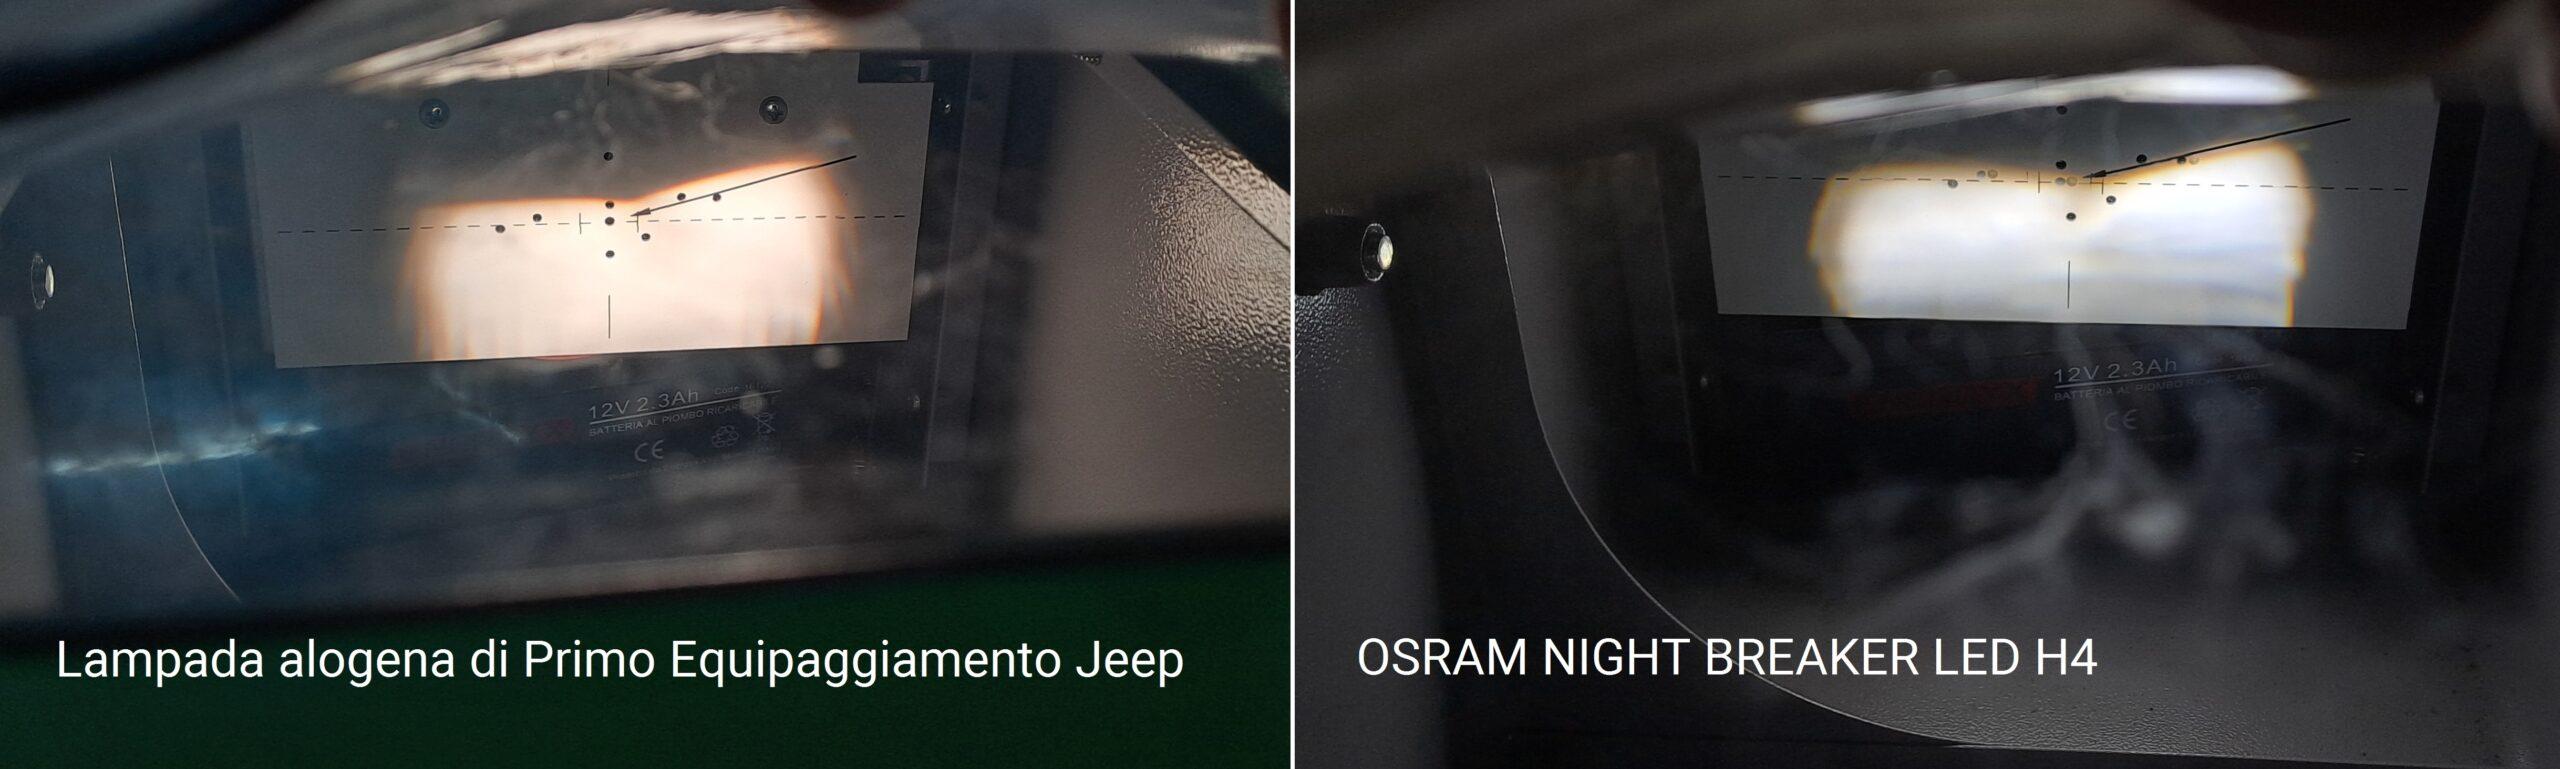 LED H7 omologato FIAT Tipo OSRAM NIGHT BREAKER